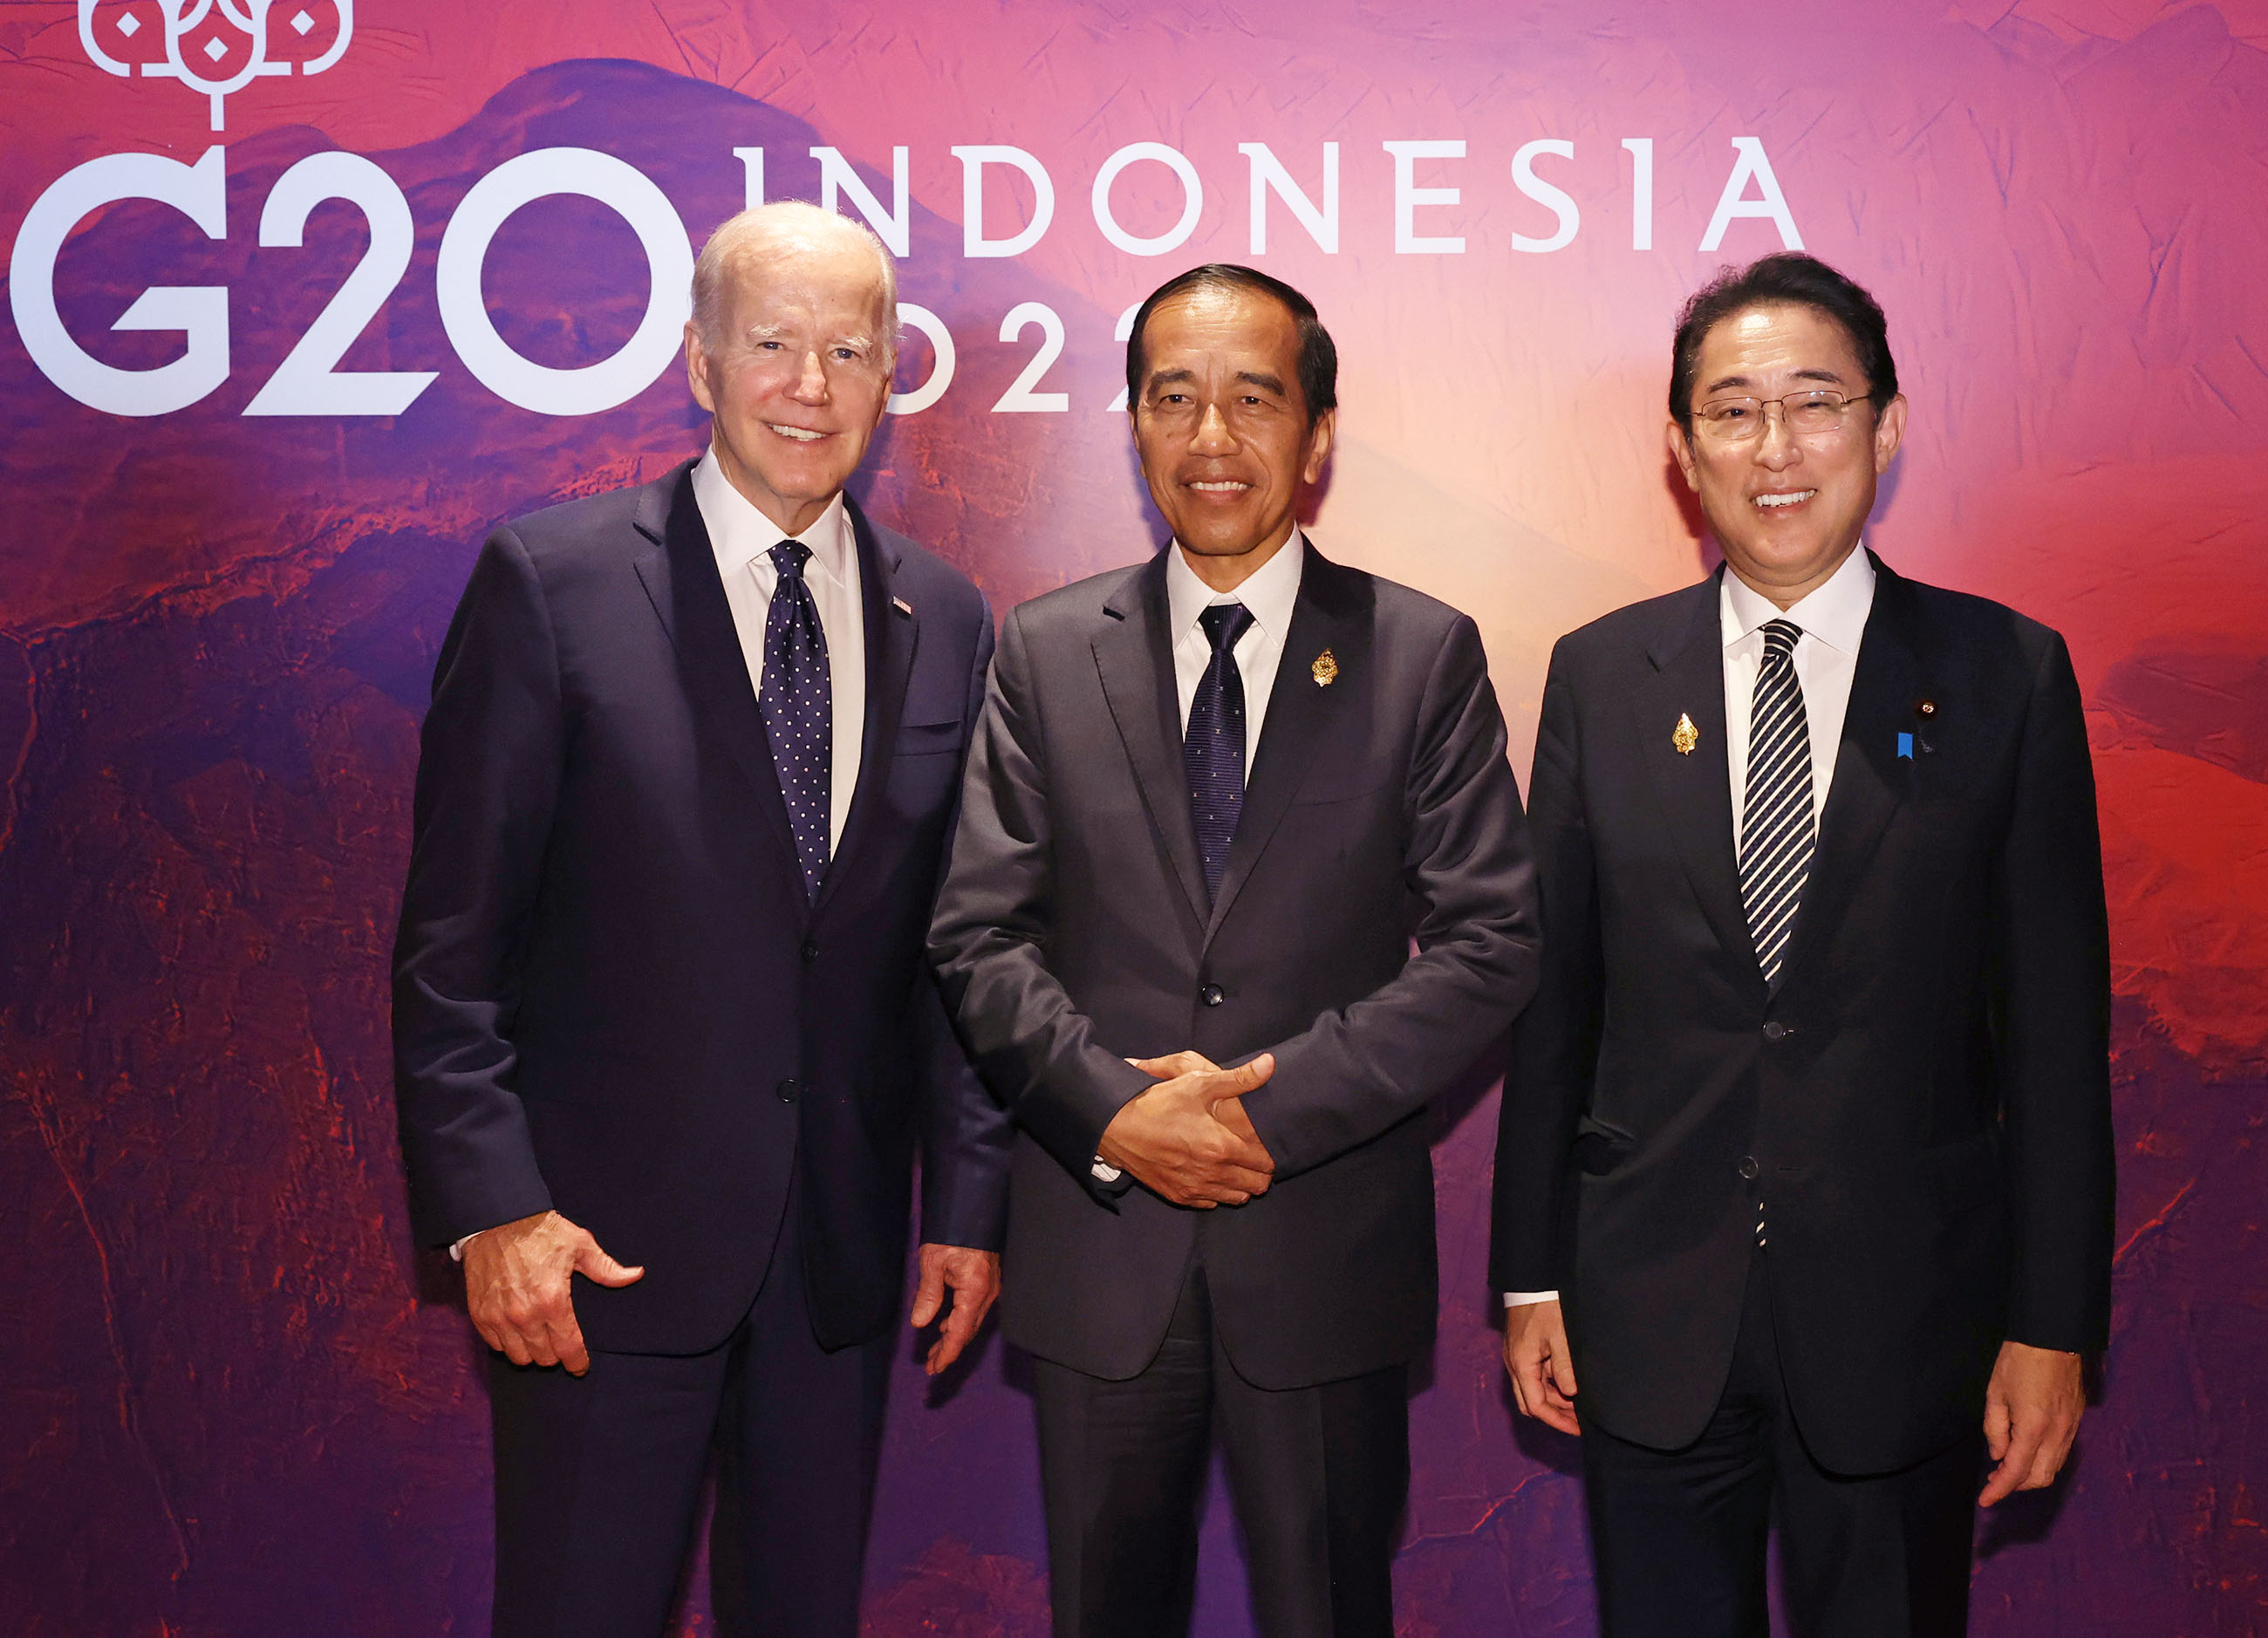 ジョセフ・バイデン米国大統領及びジョコ・ウィドド・インドネシア大統領との写真撮影